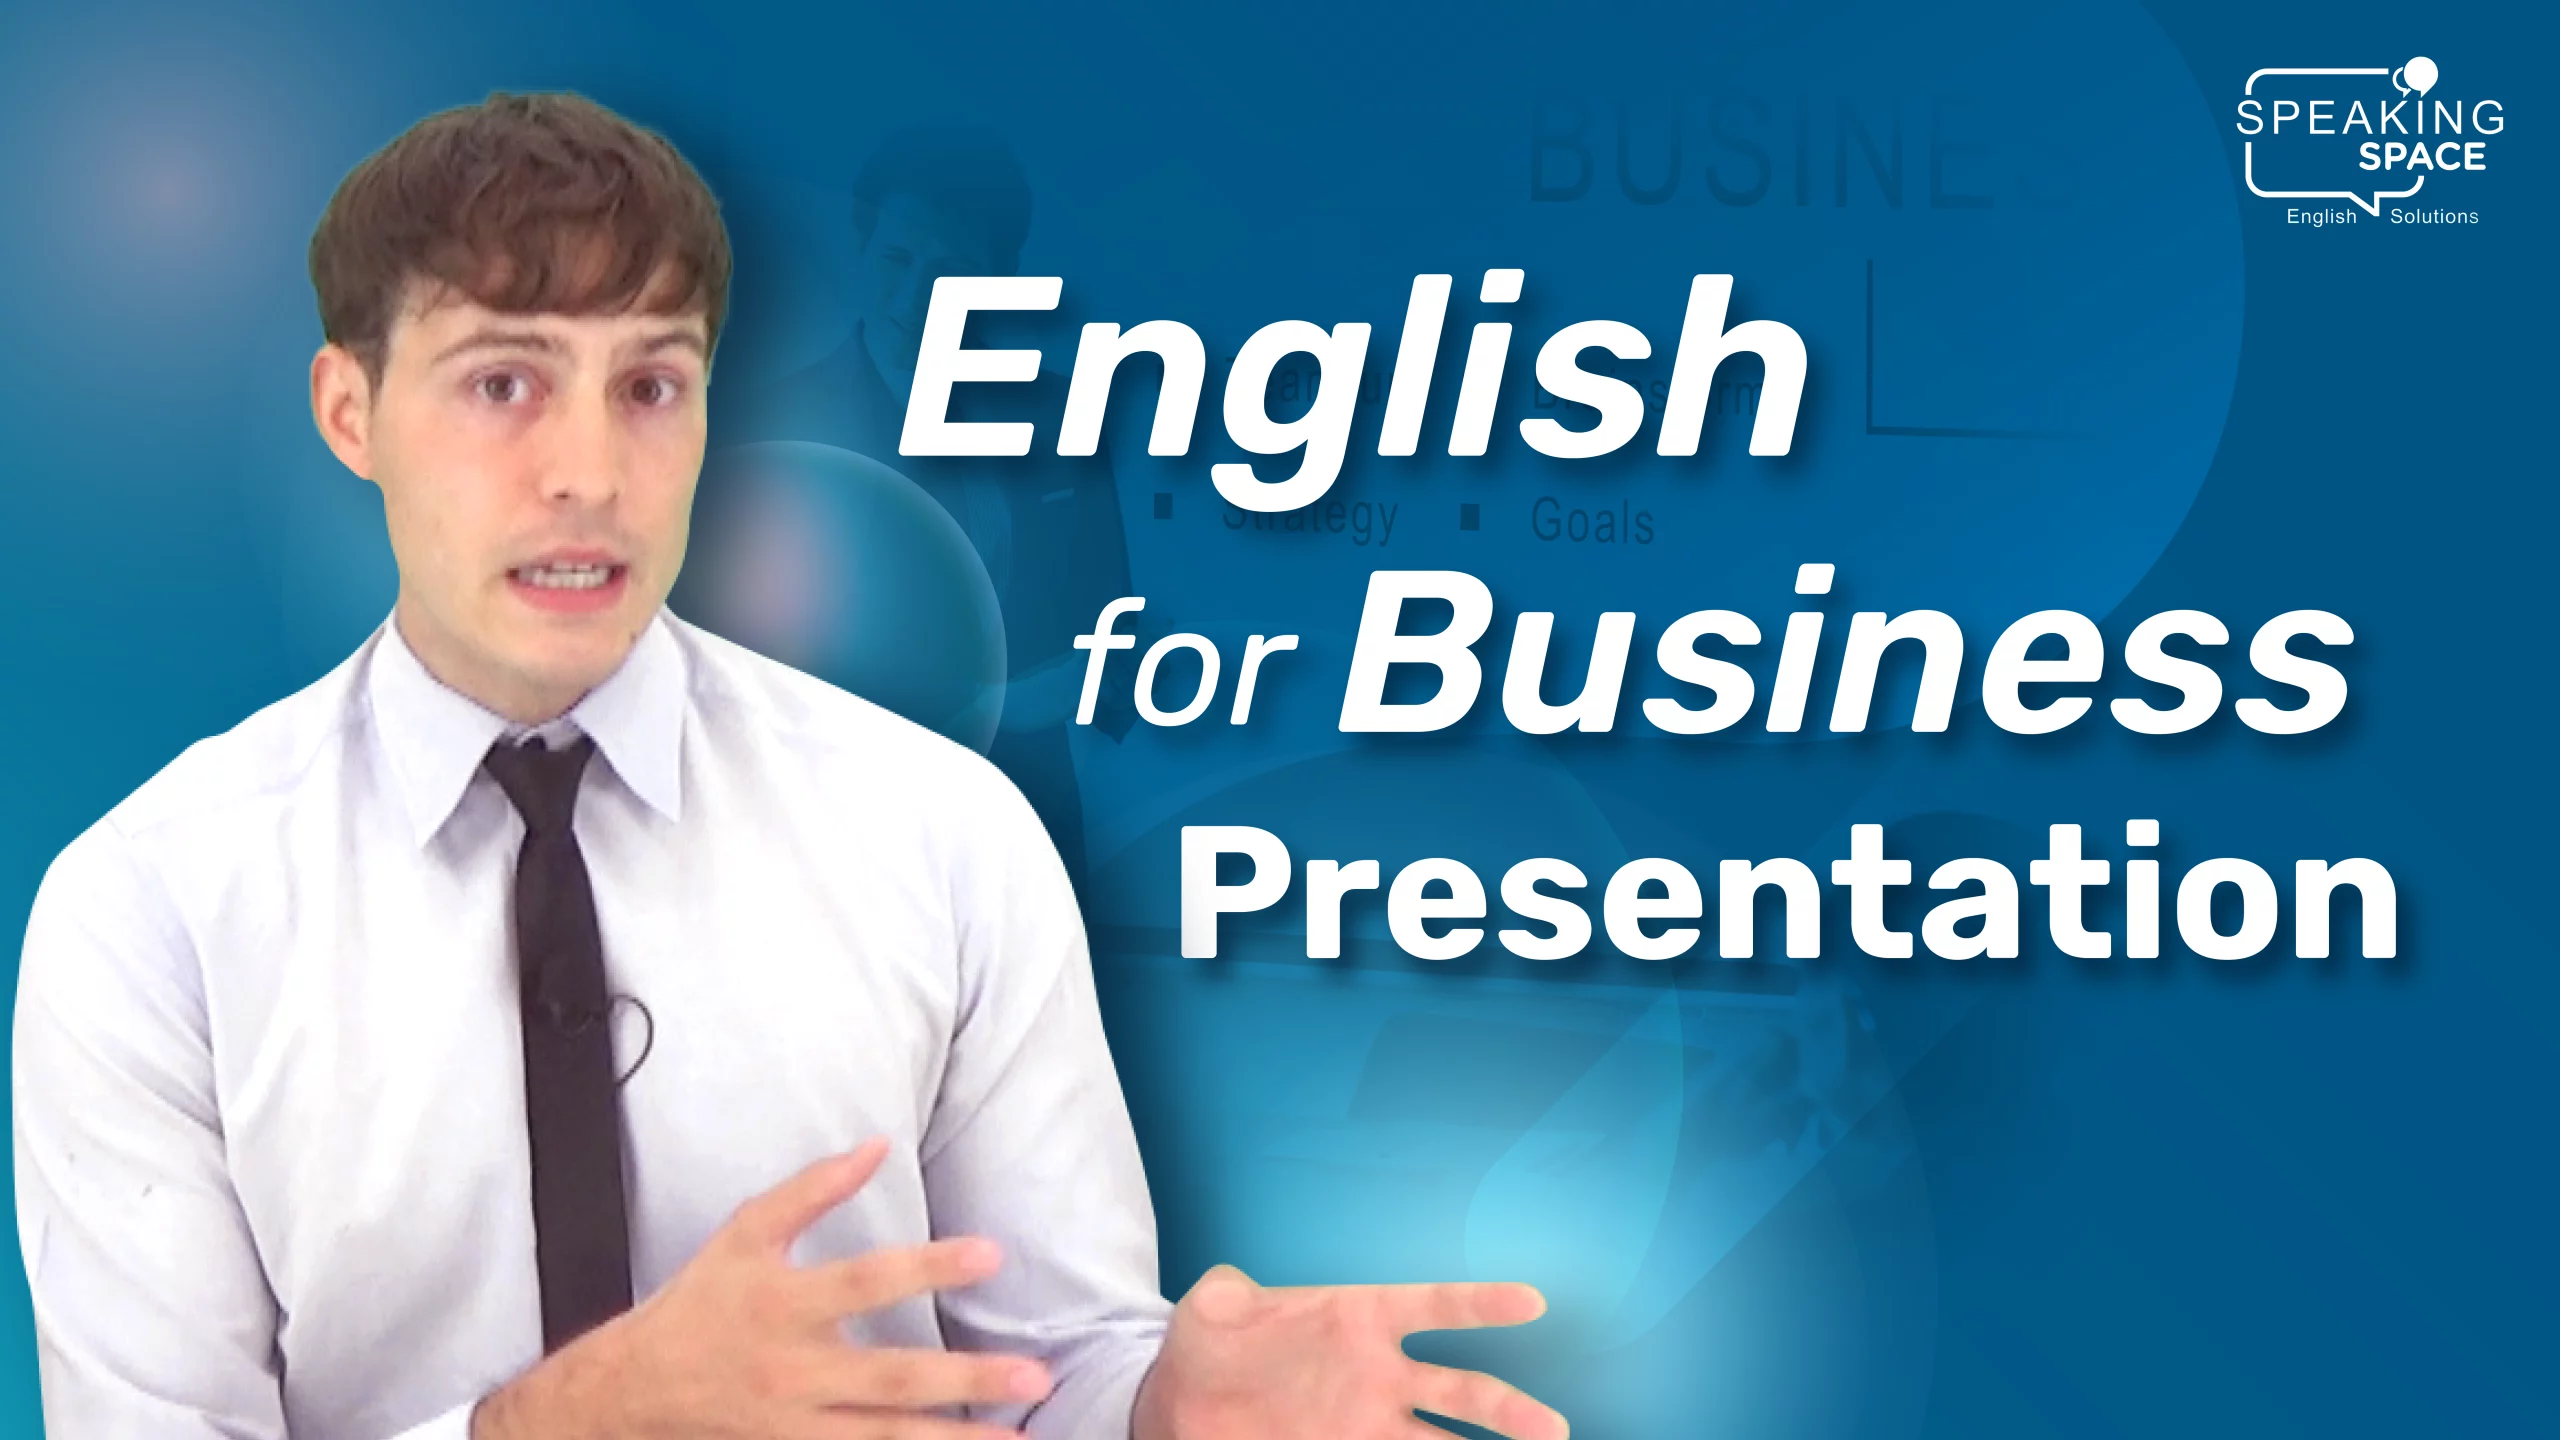 การนำเสนอทางธุรกิจ English for Business Presentation